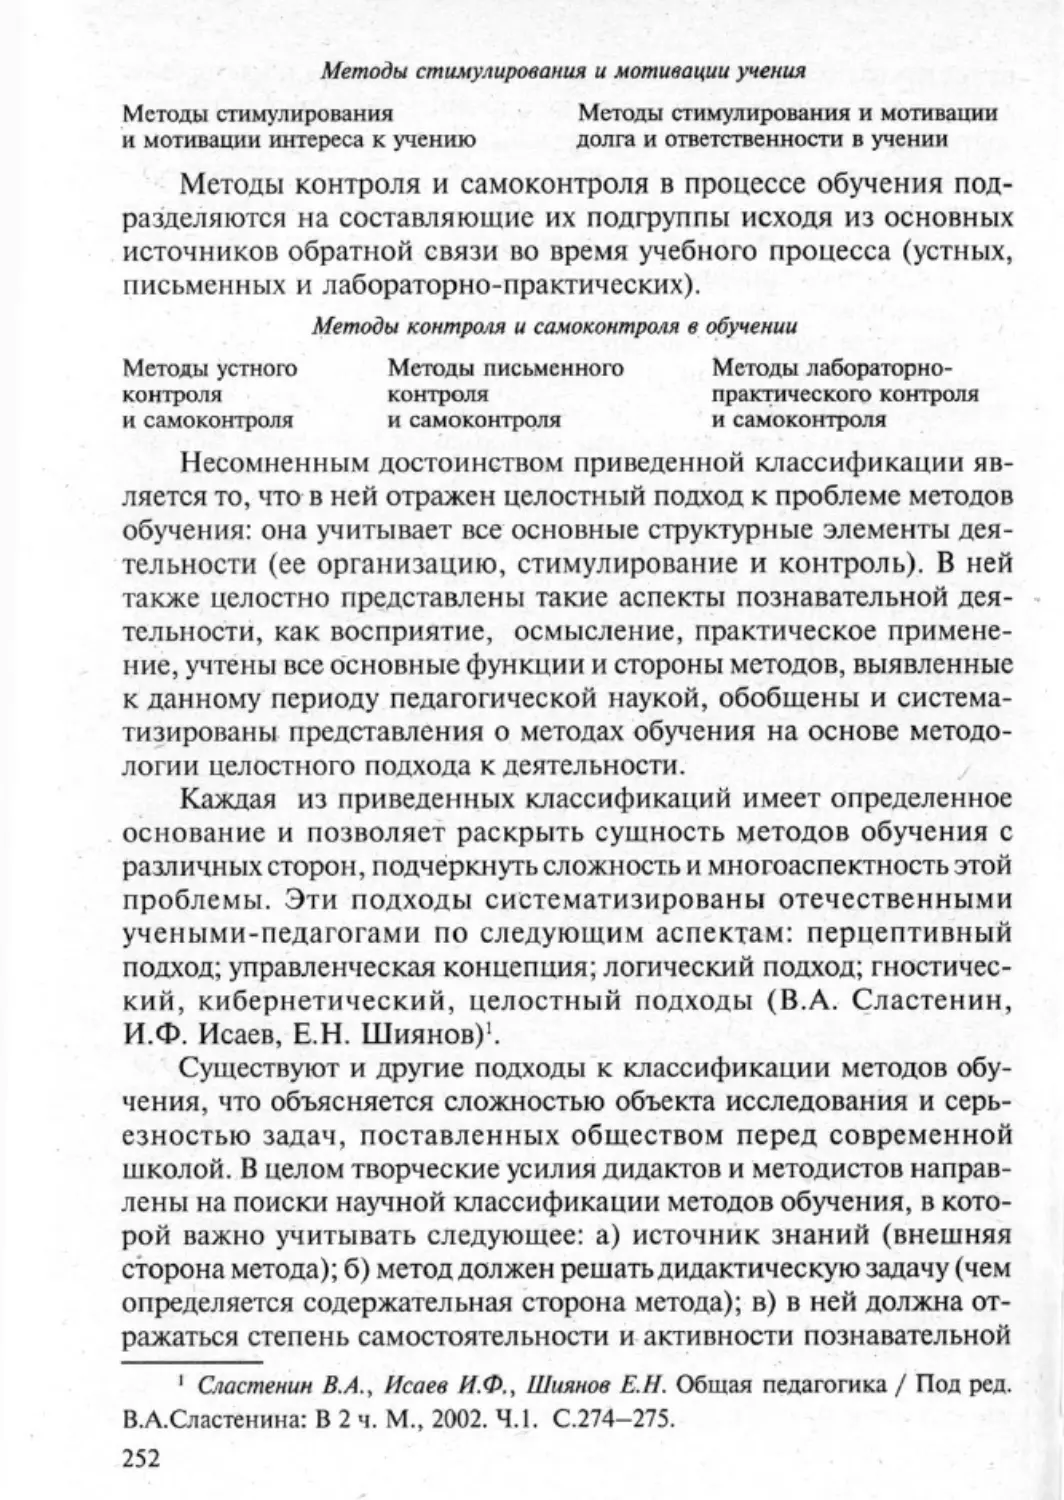 Загрекова Л.В., Николаева В.В - 0253